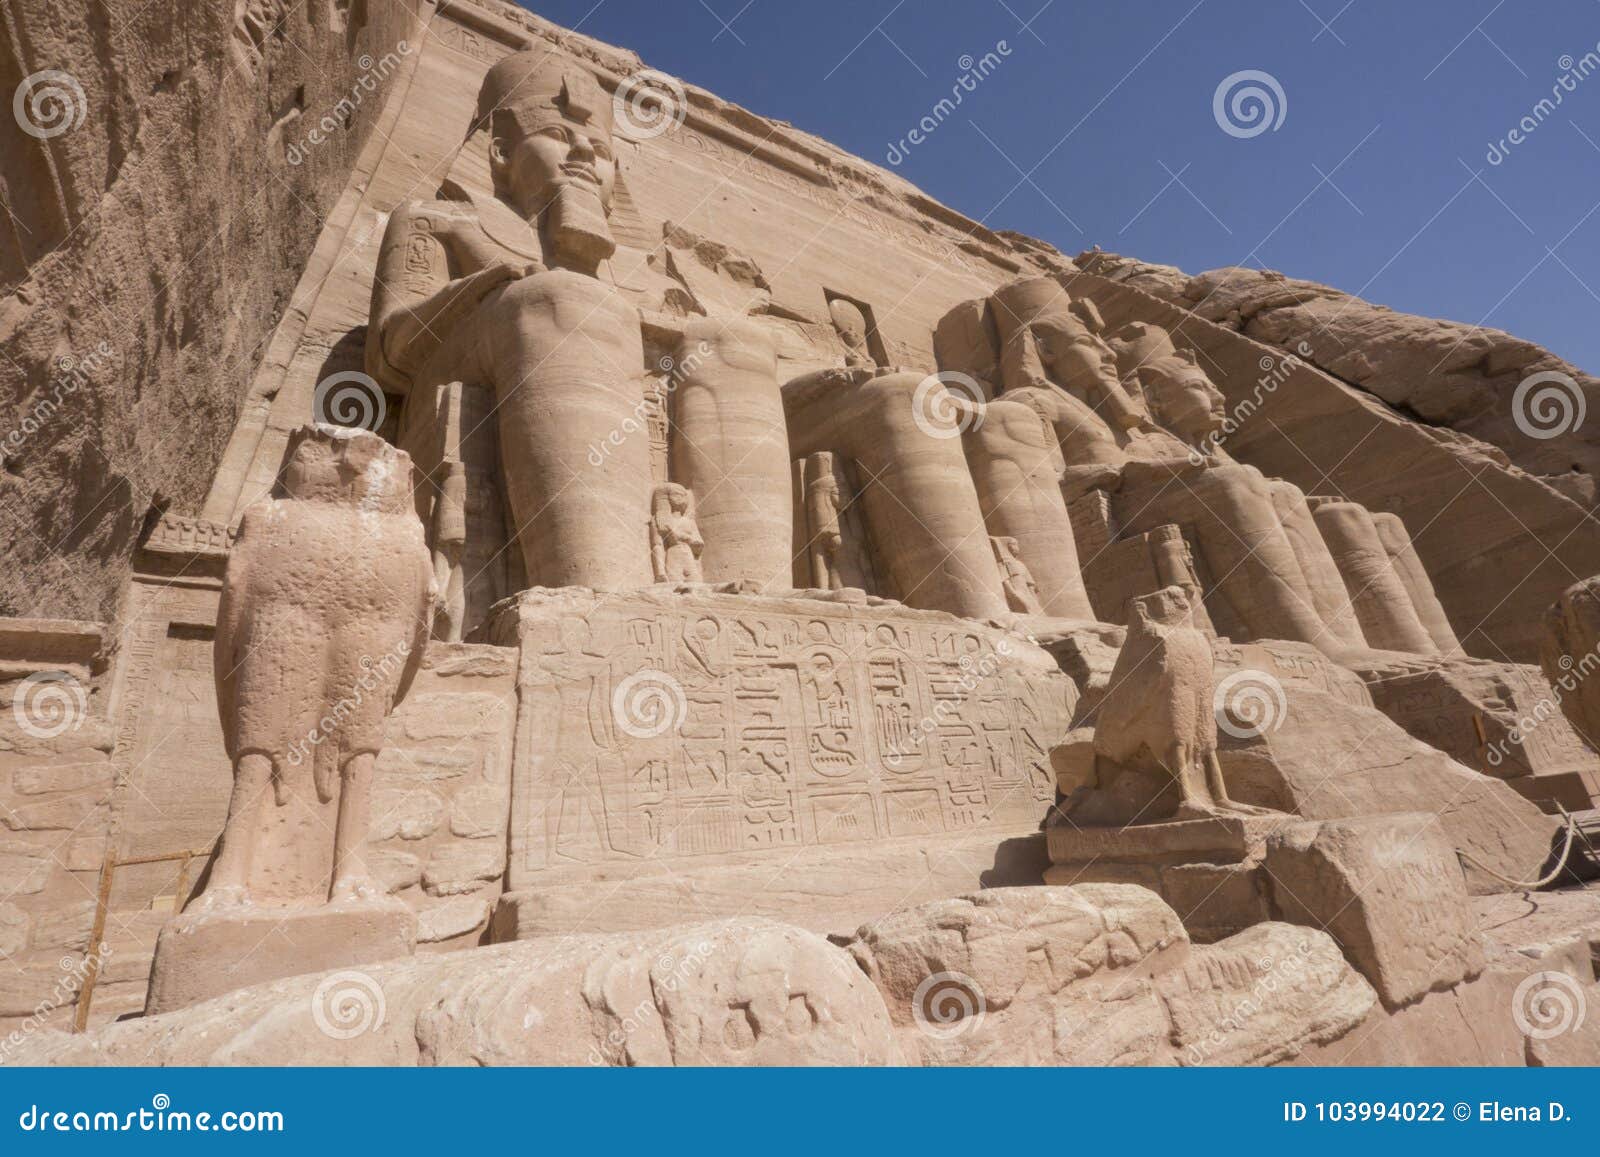 faÃÂ§ade great temple of ramses ii in abu simbel, egypt